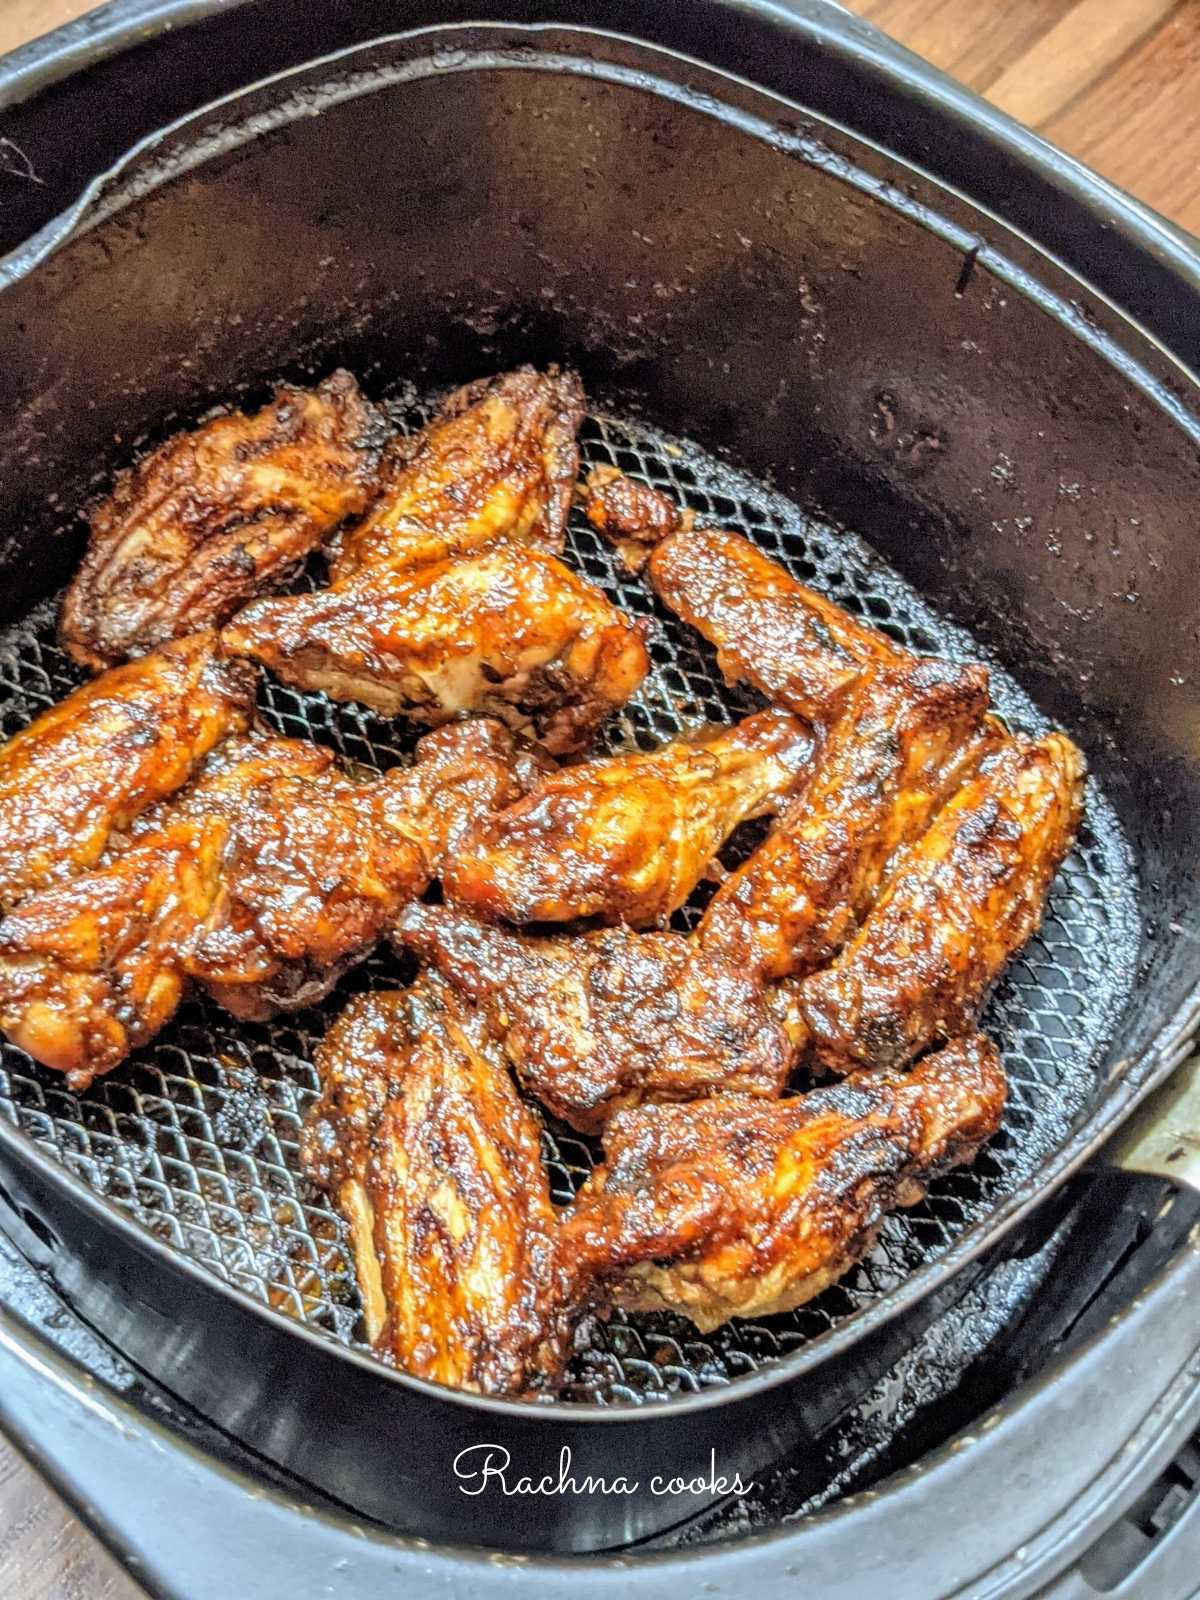 Chicken wings in air fryer basket